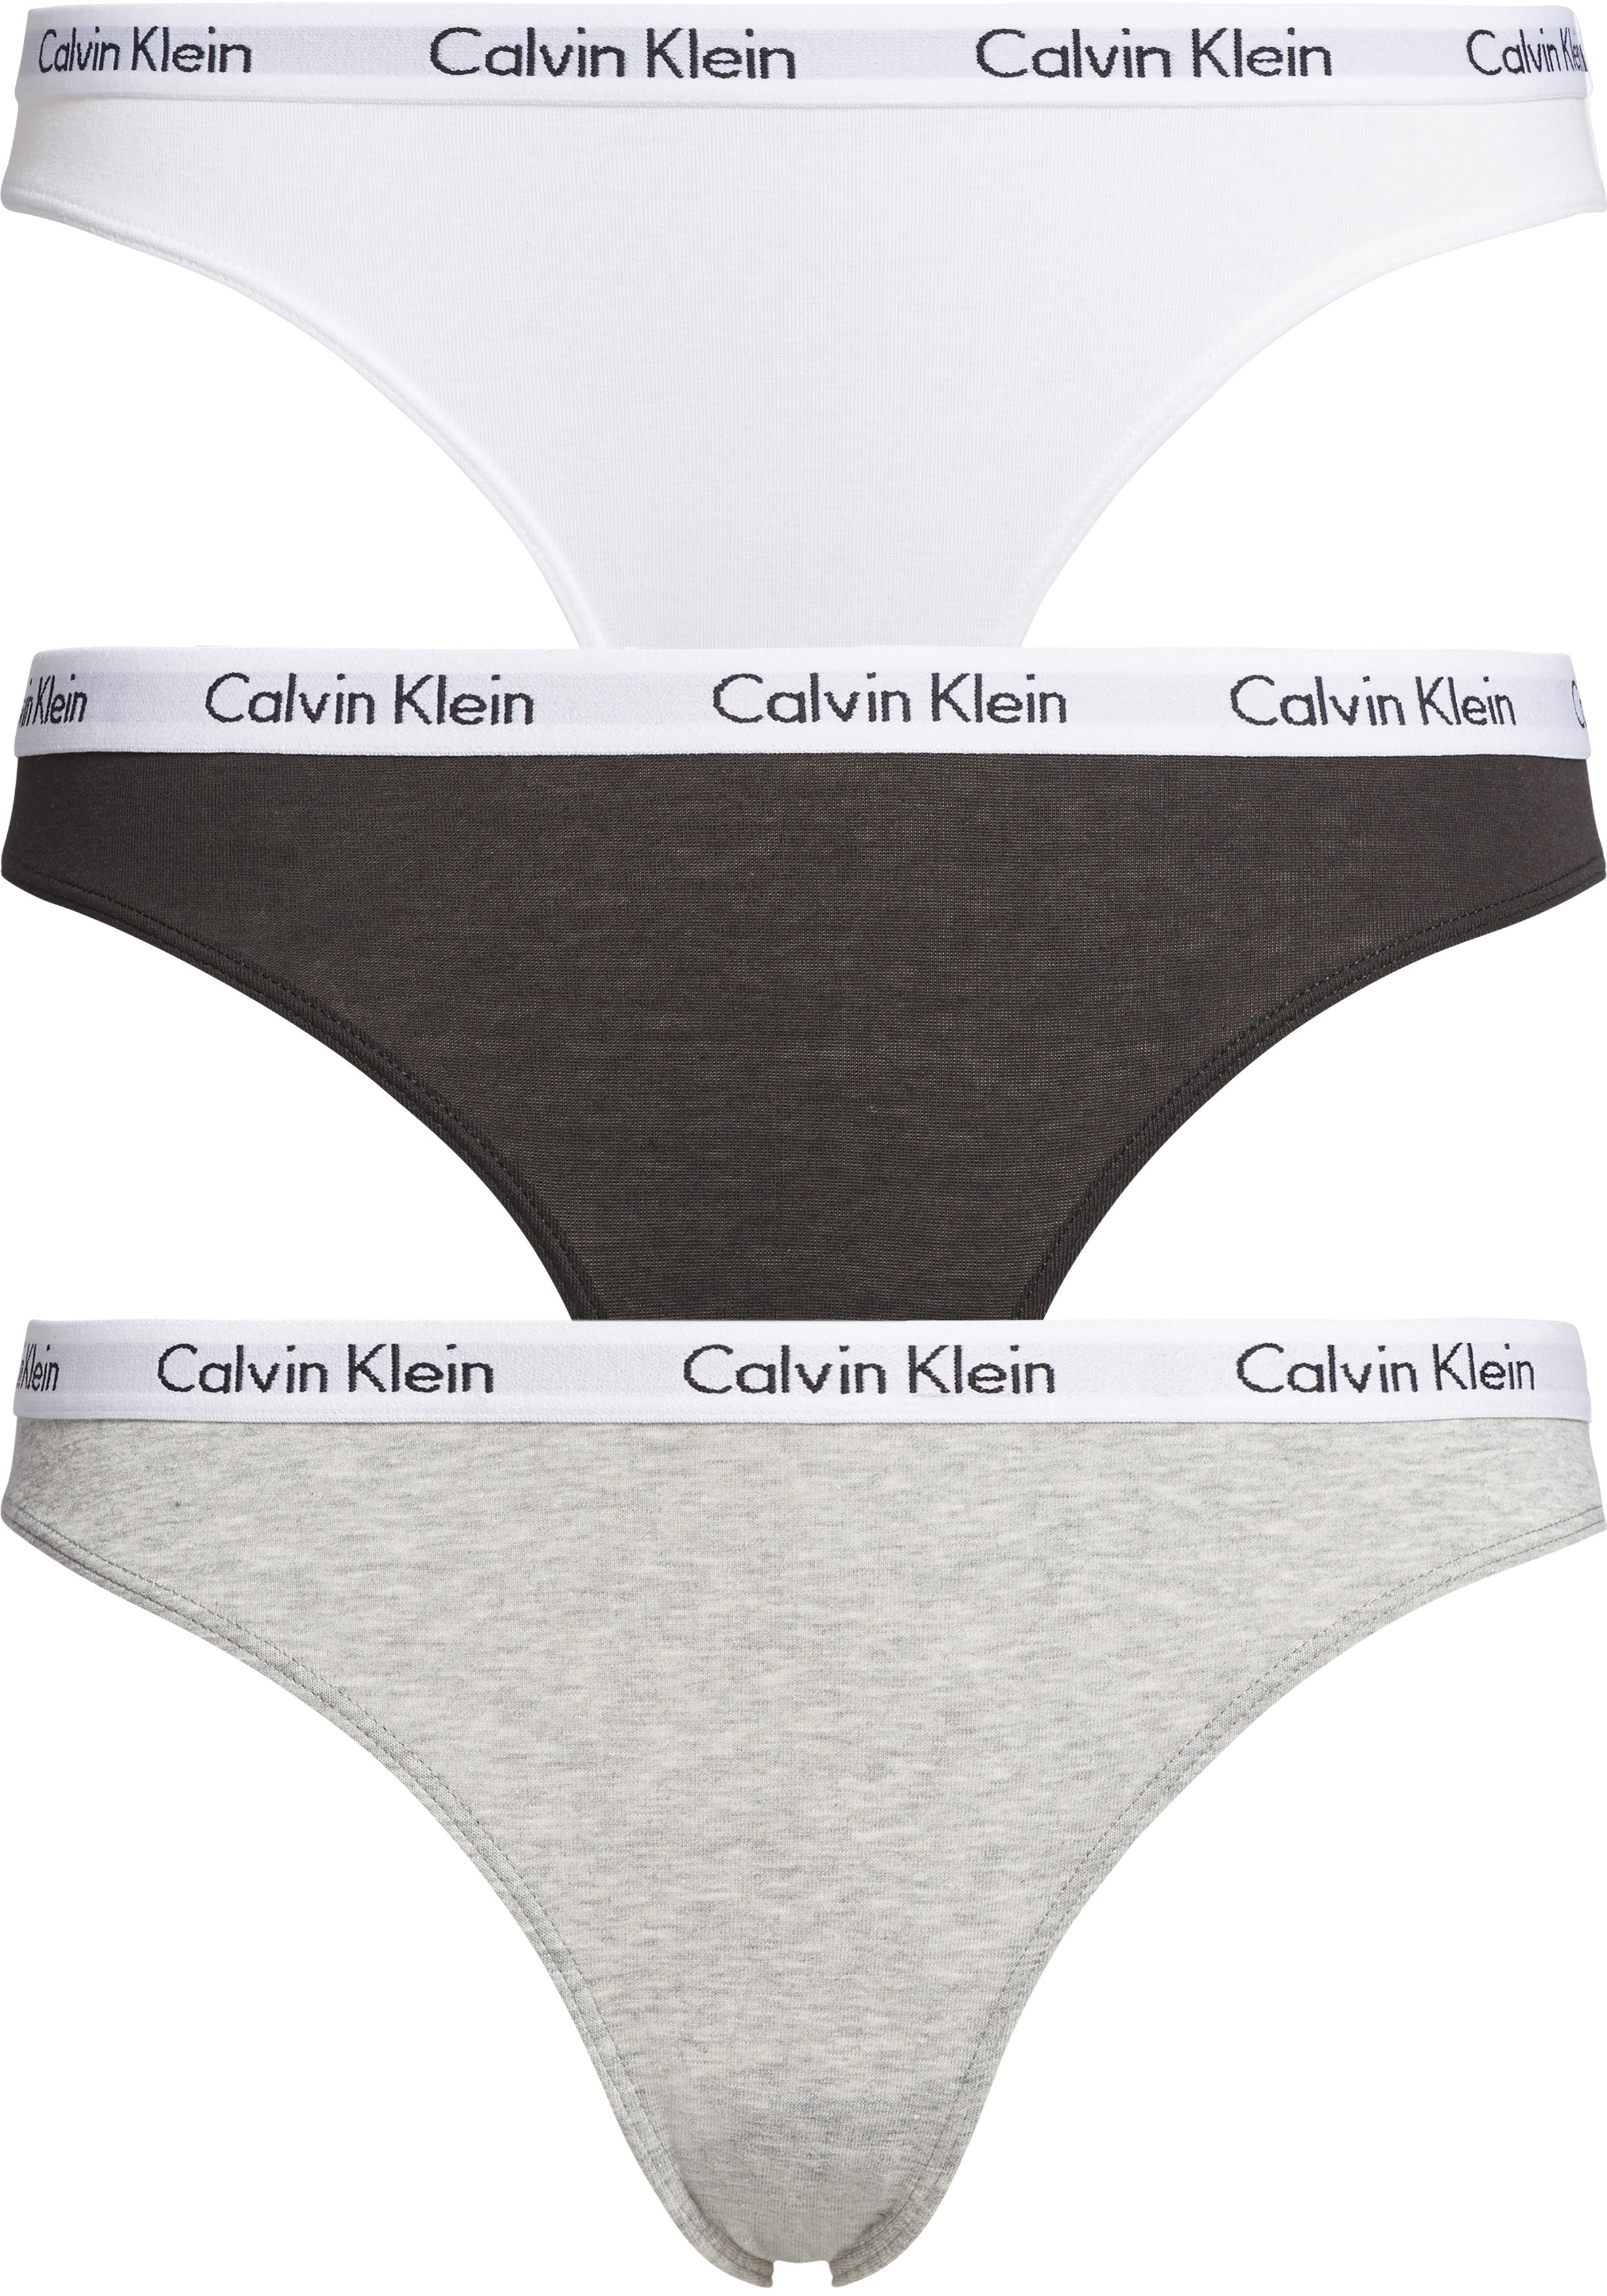 Calvin Klein dames slips (3-pack), zwart, wit en grijs